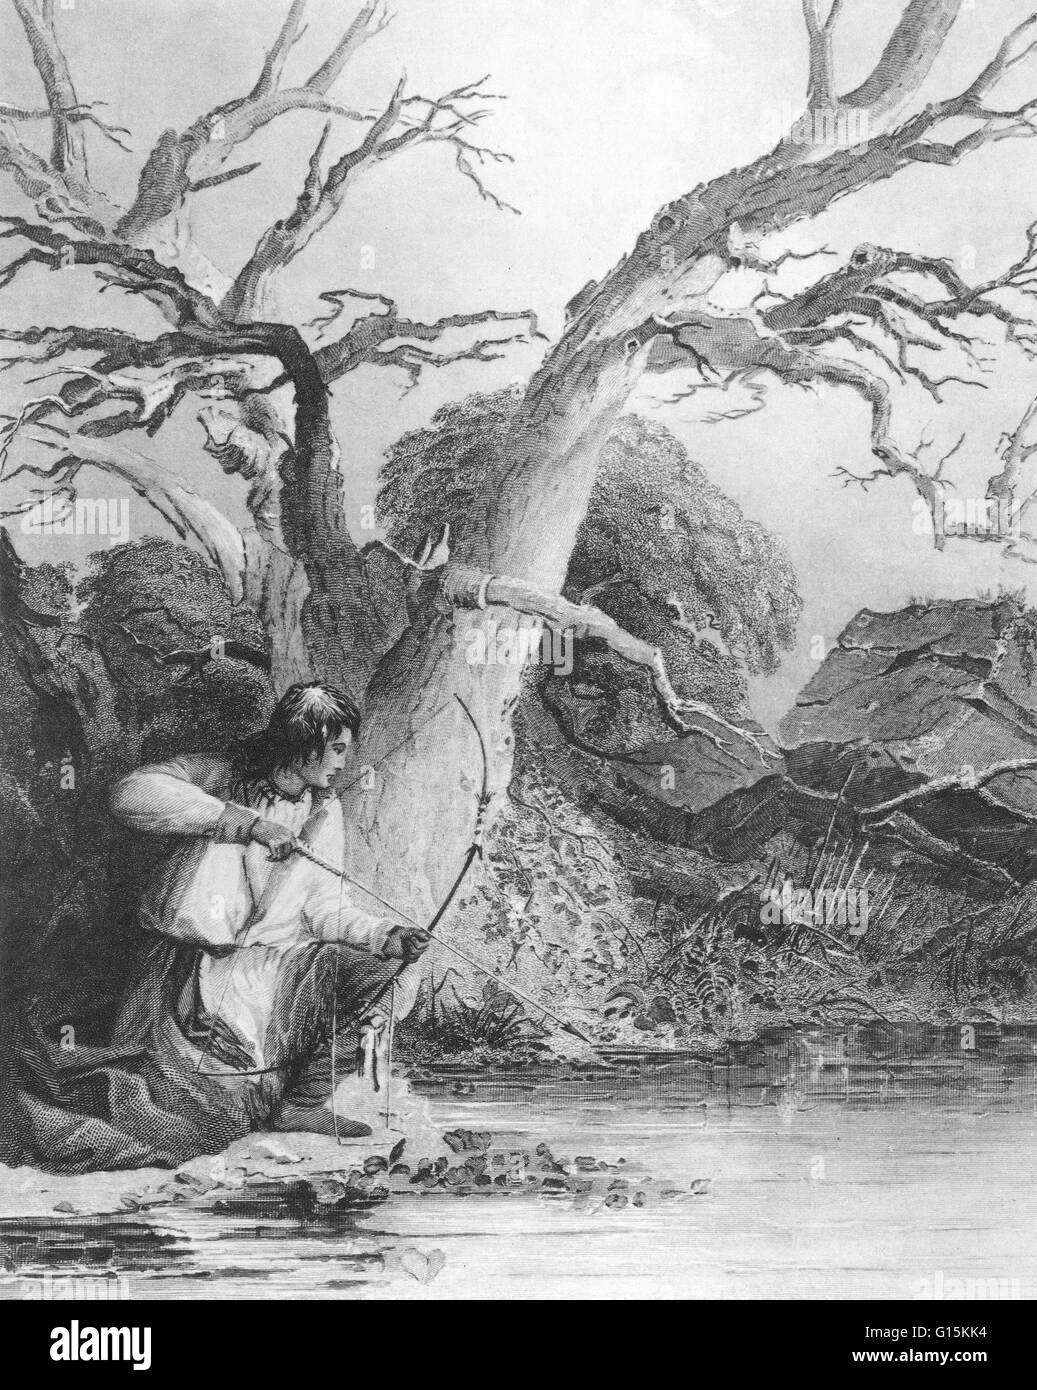 Ein indischer Junge kleine Fische, Region der großen Seen. Zeichnung von S. Eastman, Kupferstich von c.k. Burt aus der amerikanischen Ureinwohner Portfolio, 1853. Angeln und Jagd waren wichtige Tätigkeiten für die Indianer, die sich stark auf das Fleisch von wild Anim verlassen Stockfoto